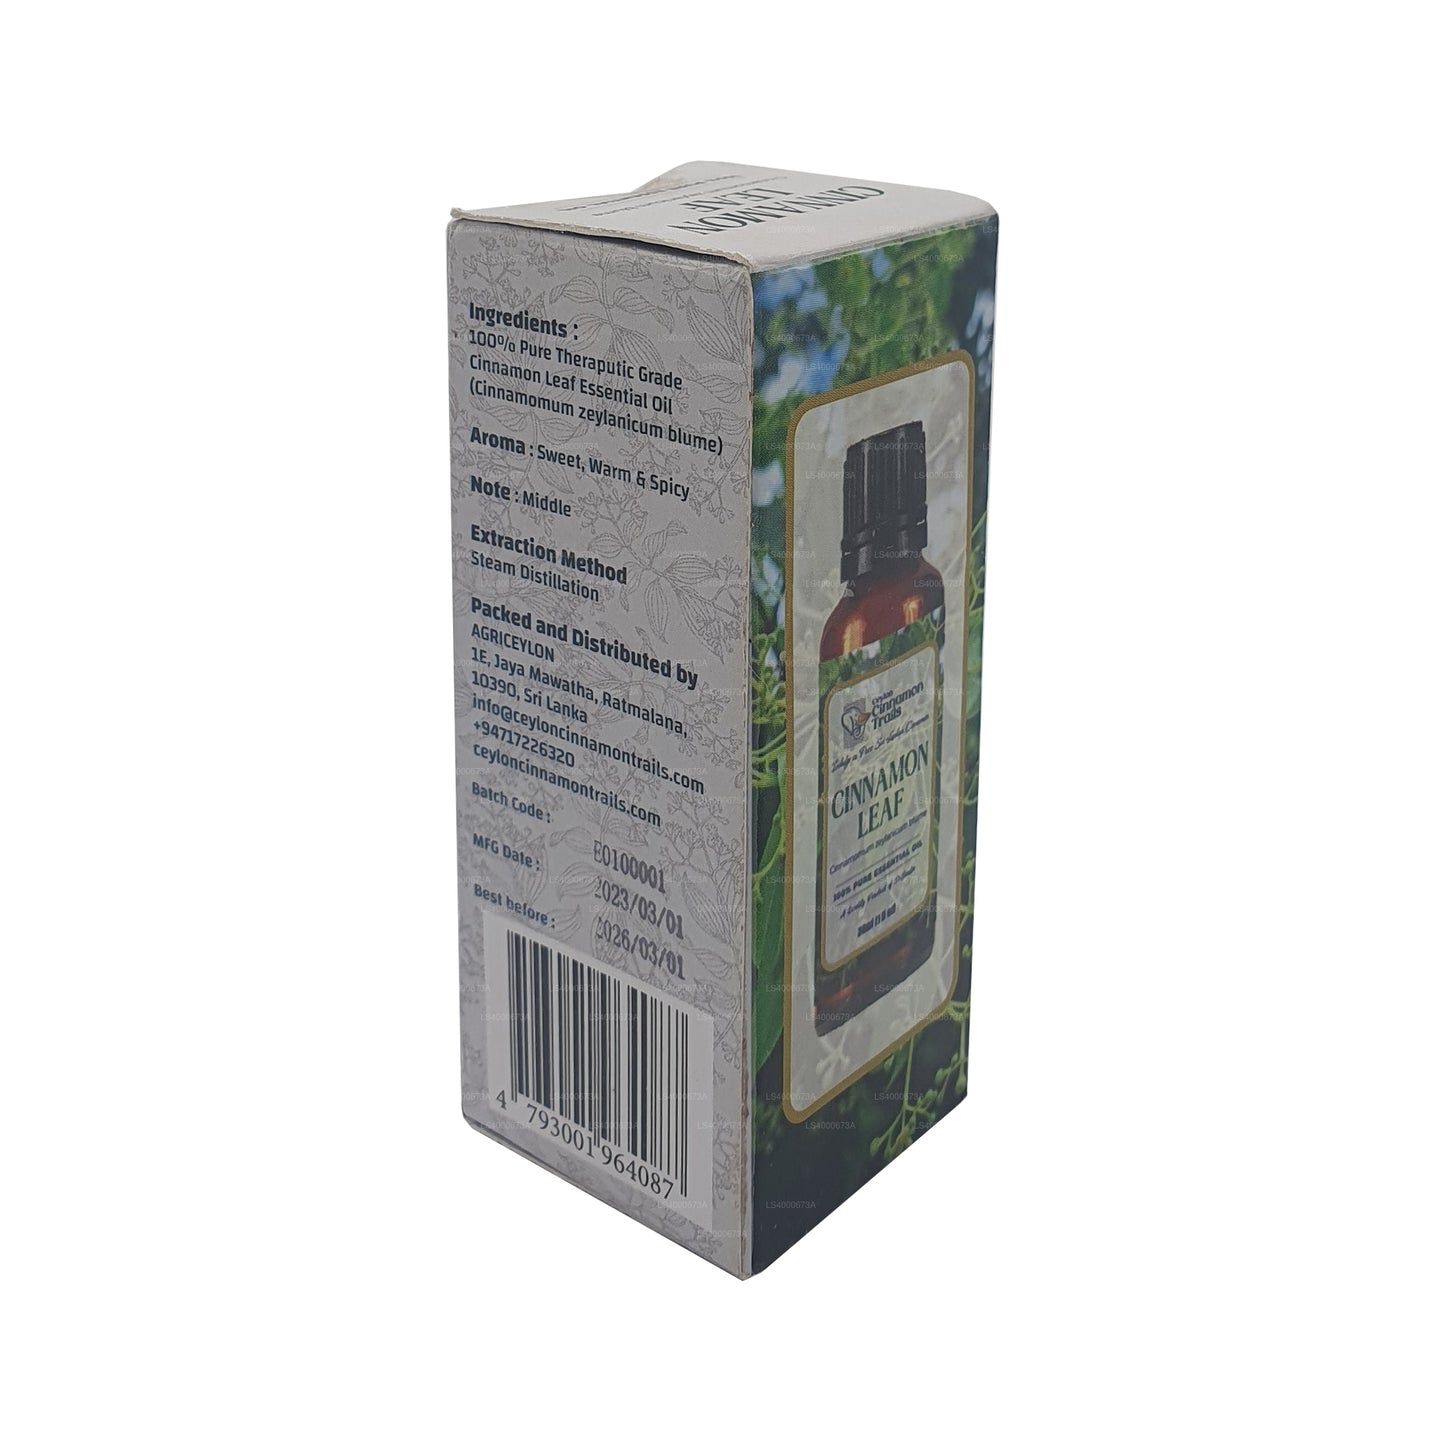 Ceylon Cinnamon Trails Cinnamon Leaf Essentials-olie (10 ml)